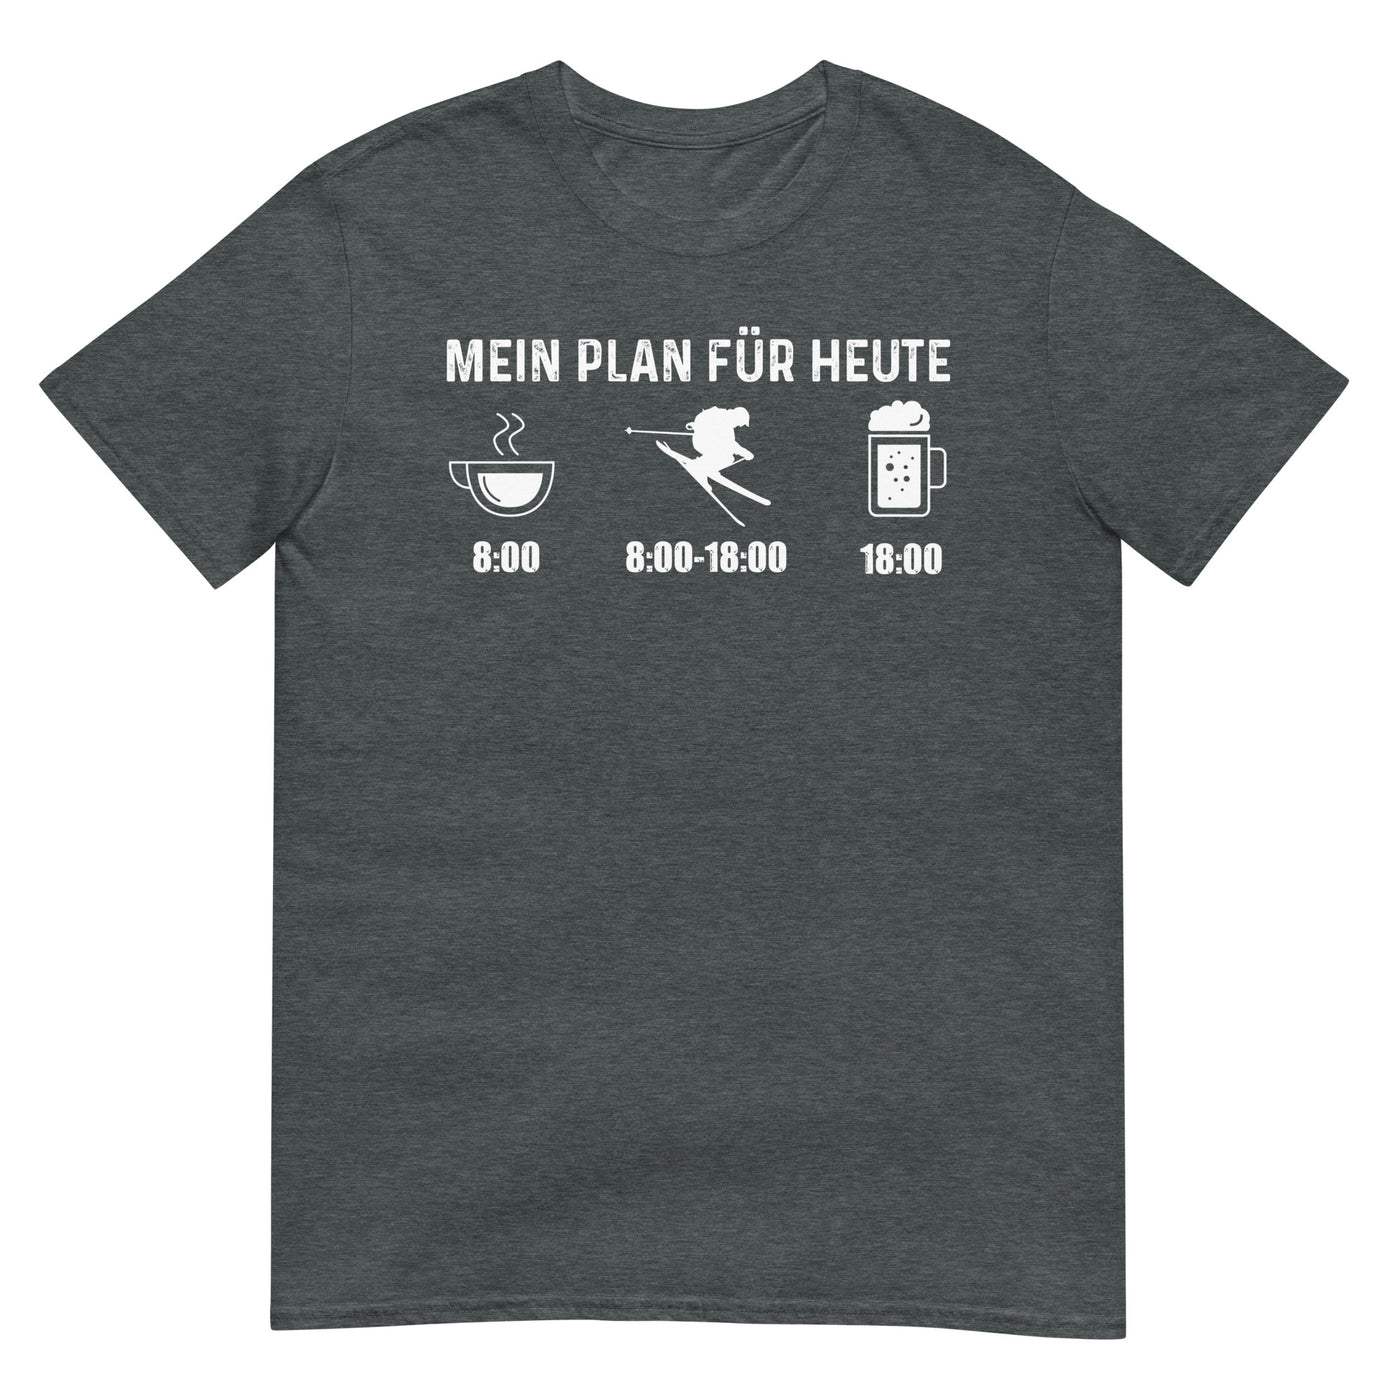 Mein Plan Für Heute - T-Shirt (Unisex) klettern ski xxx yyy zzz Dark Heather